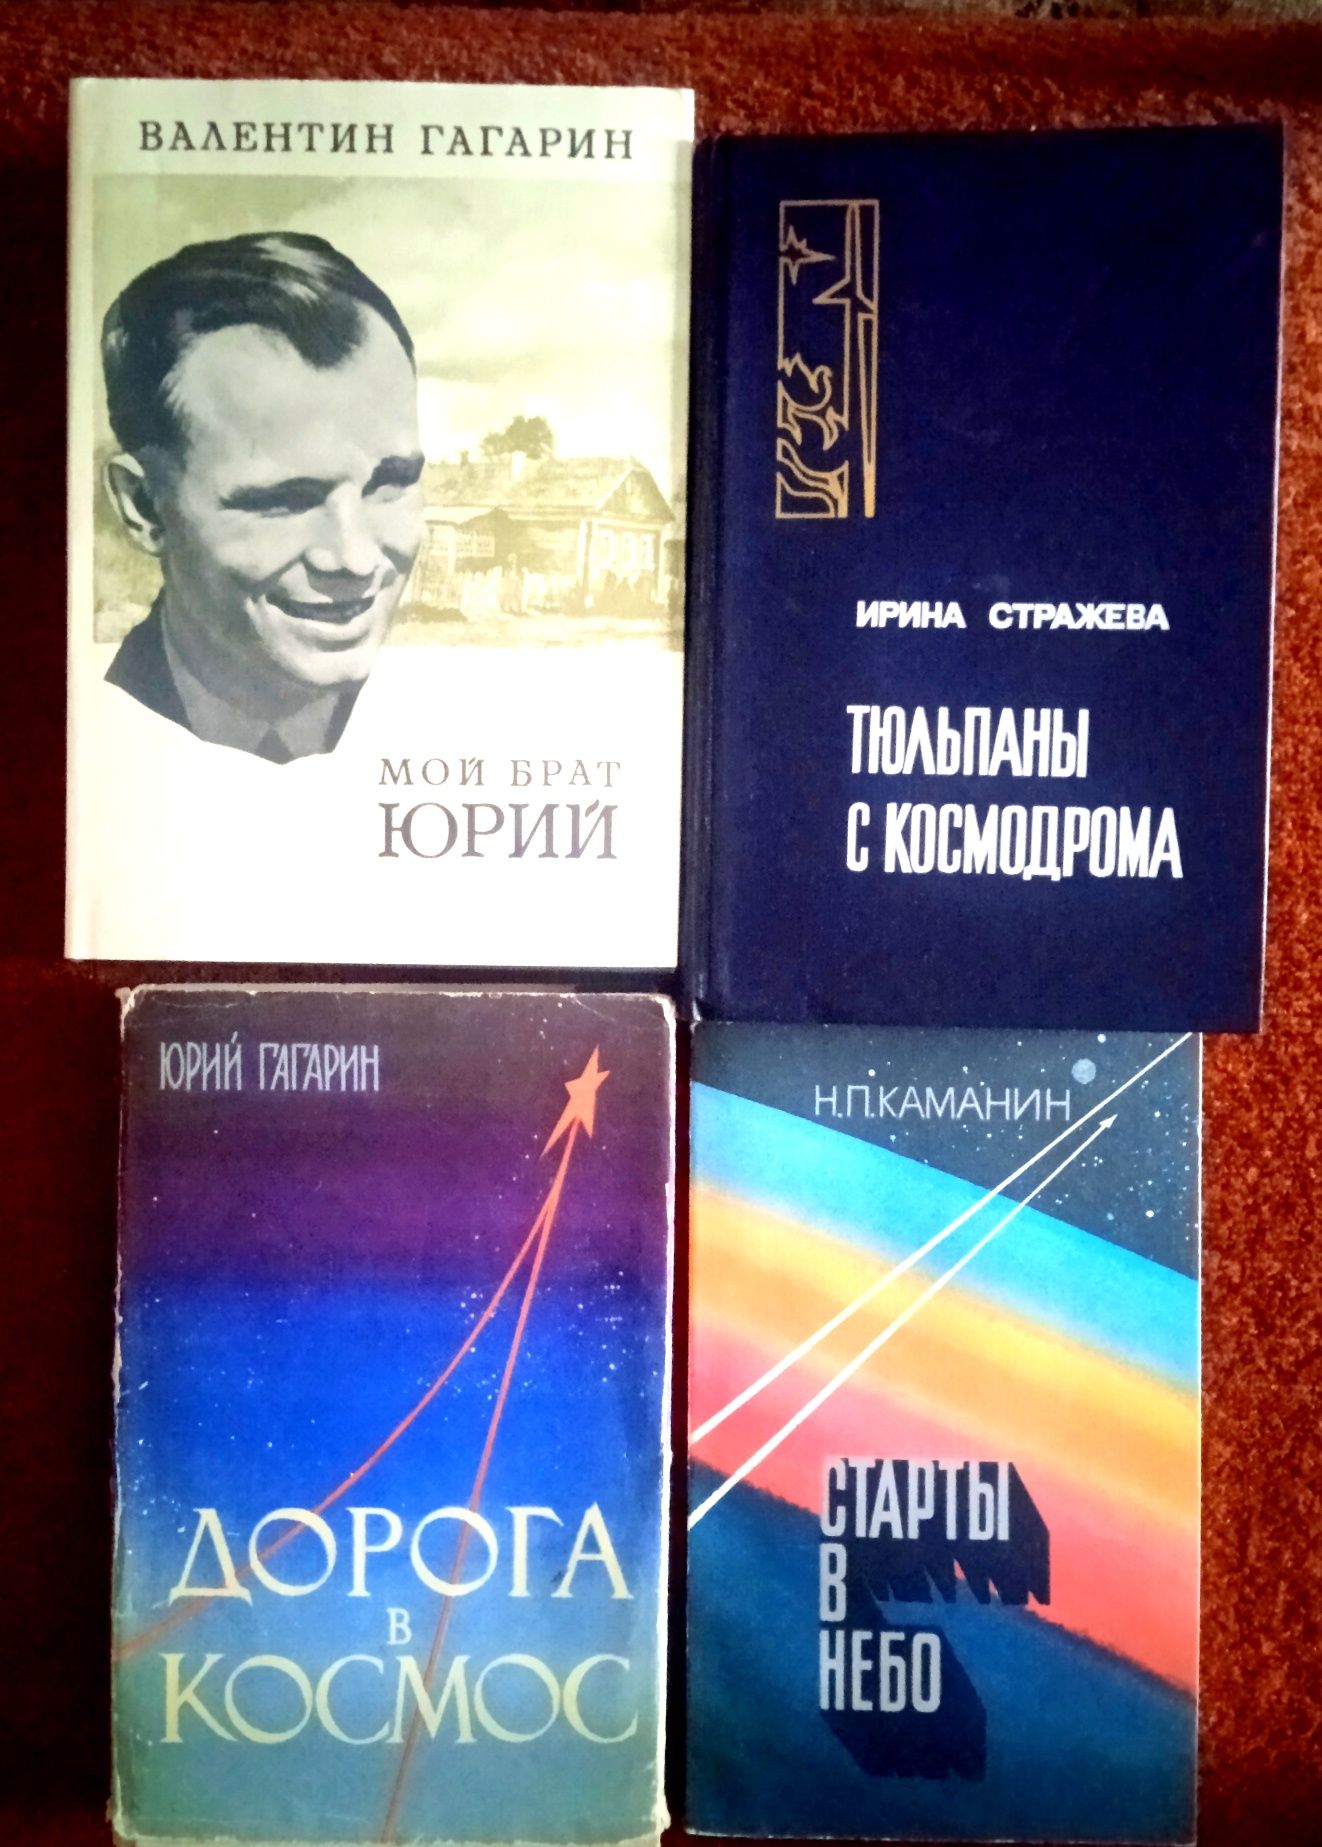 ЖЗЛ, военные мемуары, космос, космонавты, Пламенные революционеры